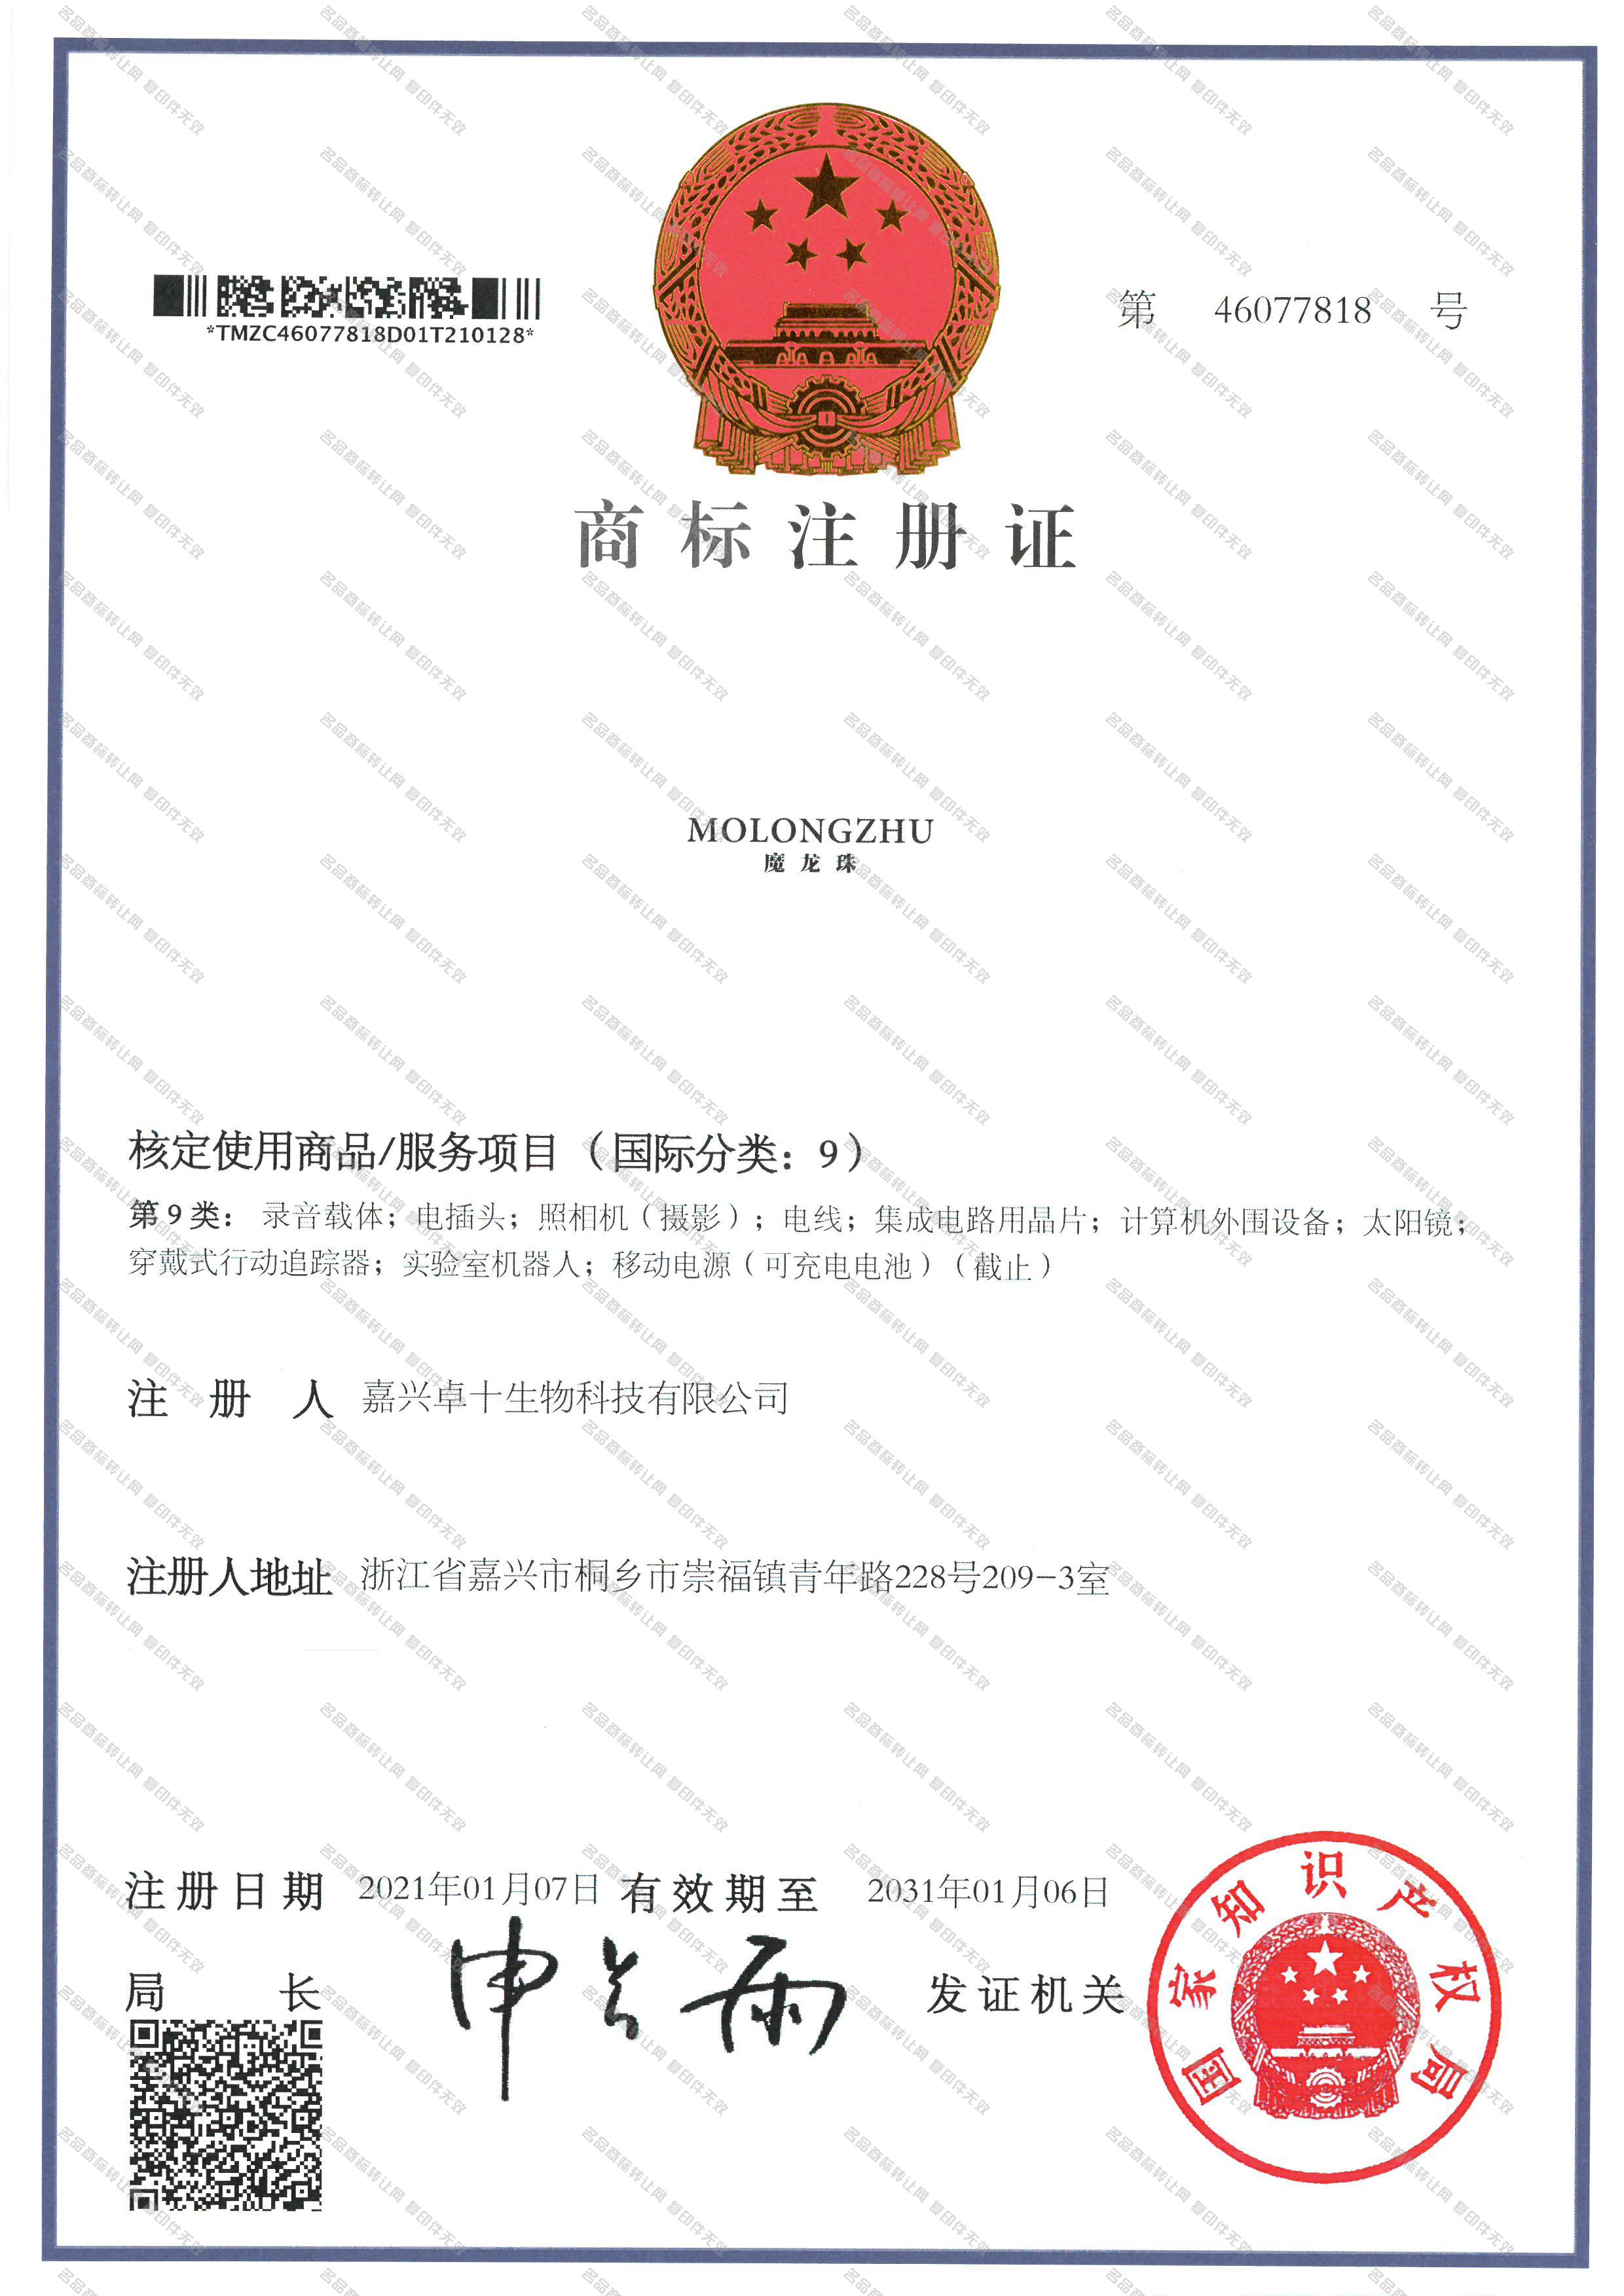 魔龙珠 MO LONG ZHU注册证